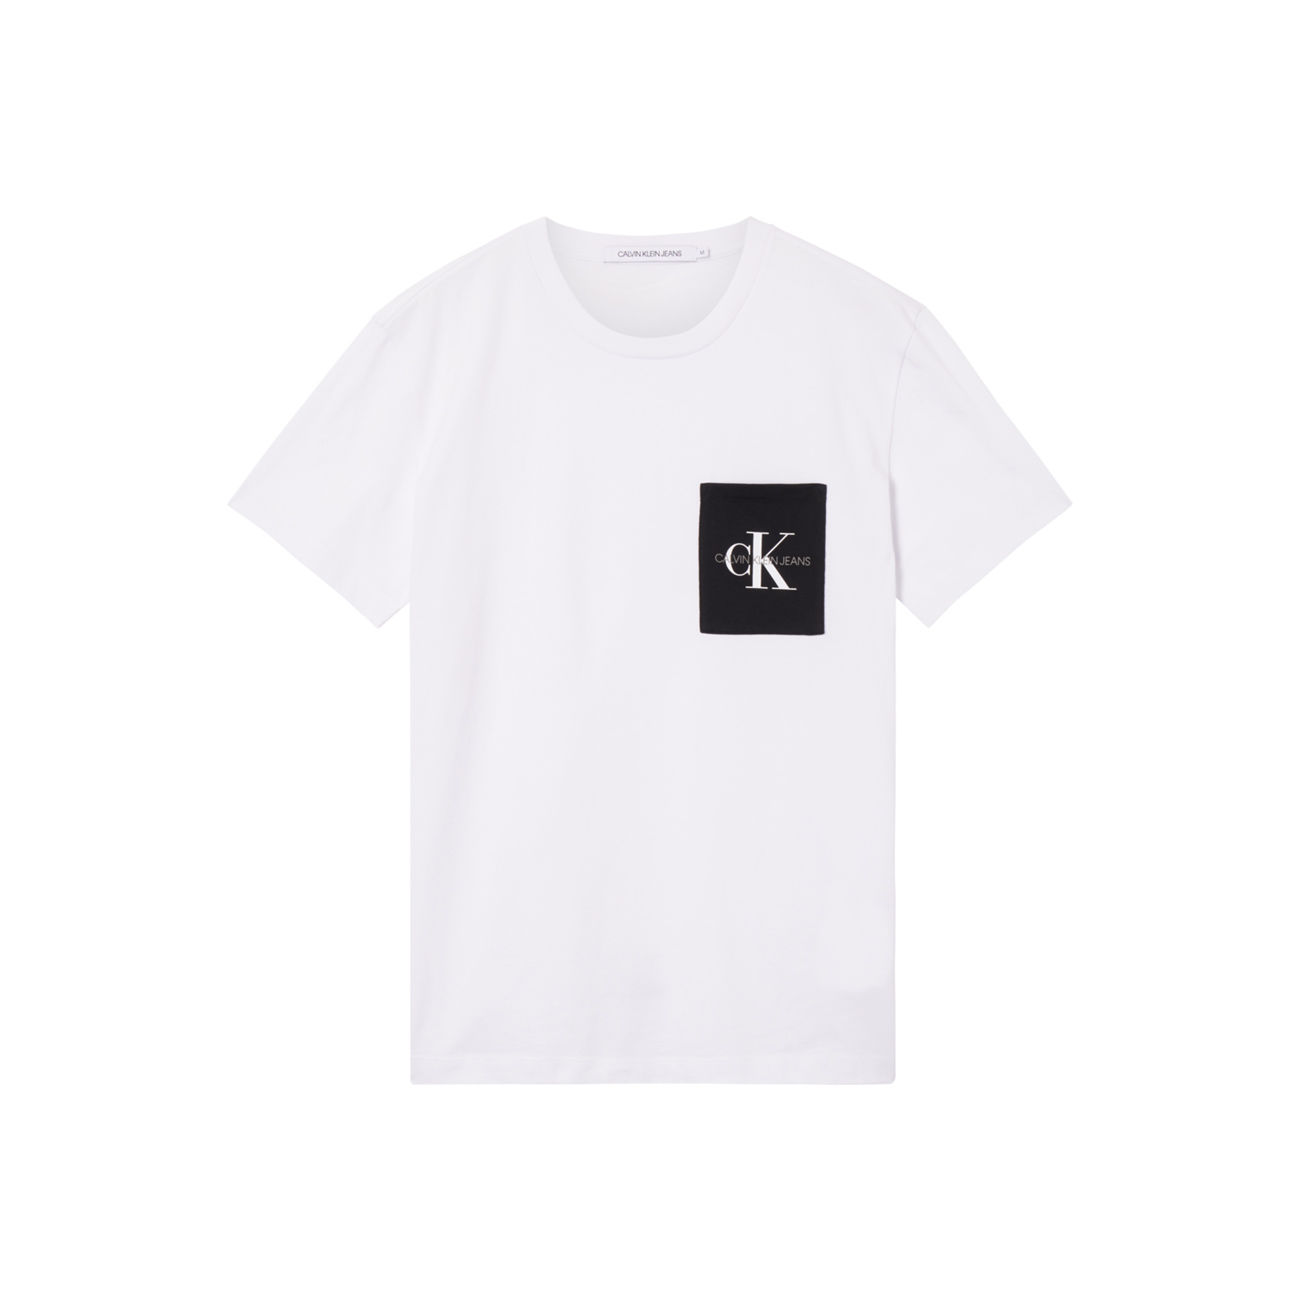 Calvin Klein t-shirt uomo CALVIN KLEIN bianco in cotone SG901 